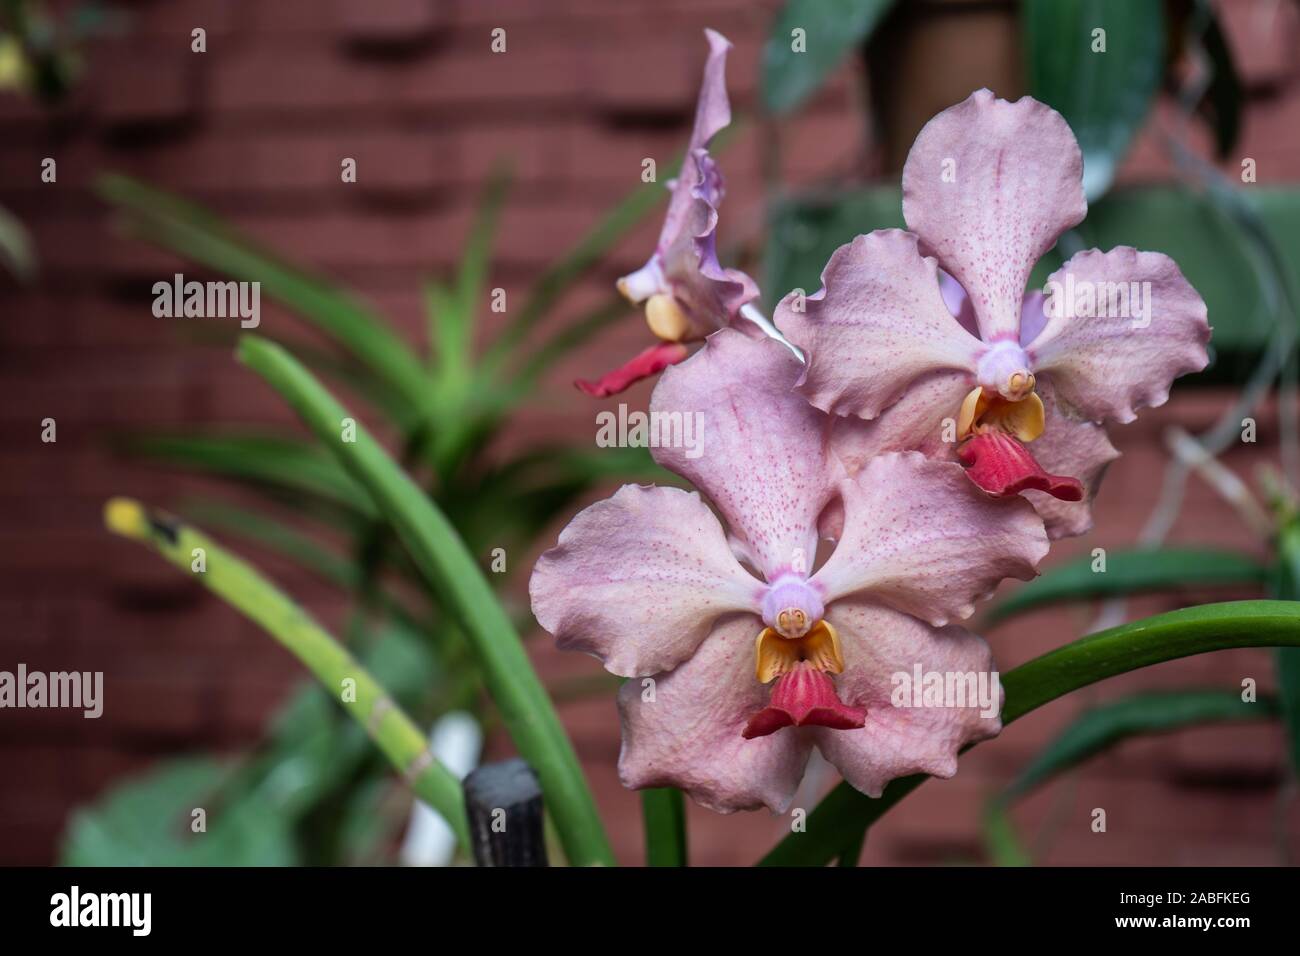 Pink vanda orchids in the garden. Queen of vanda orchids Stock Photo